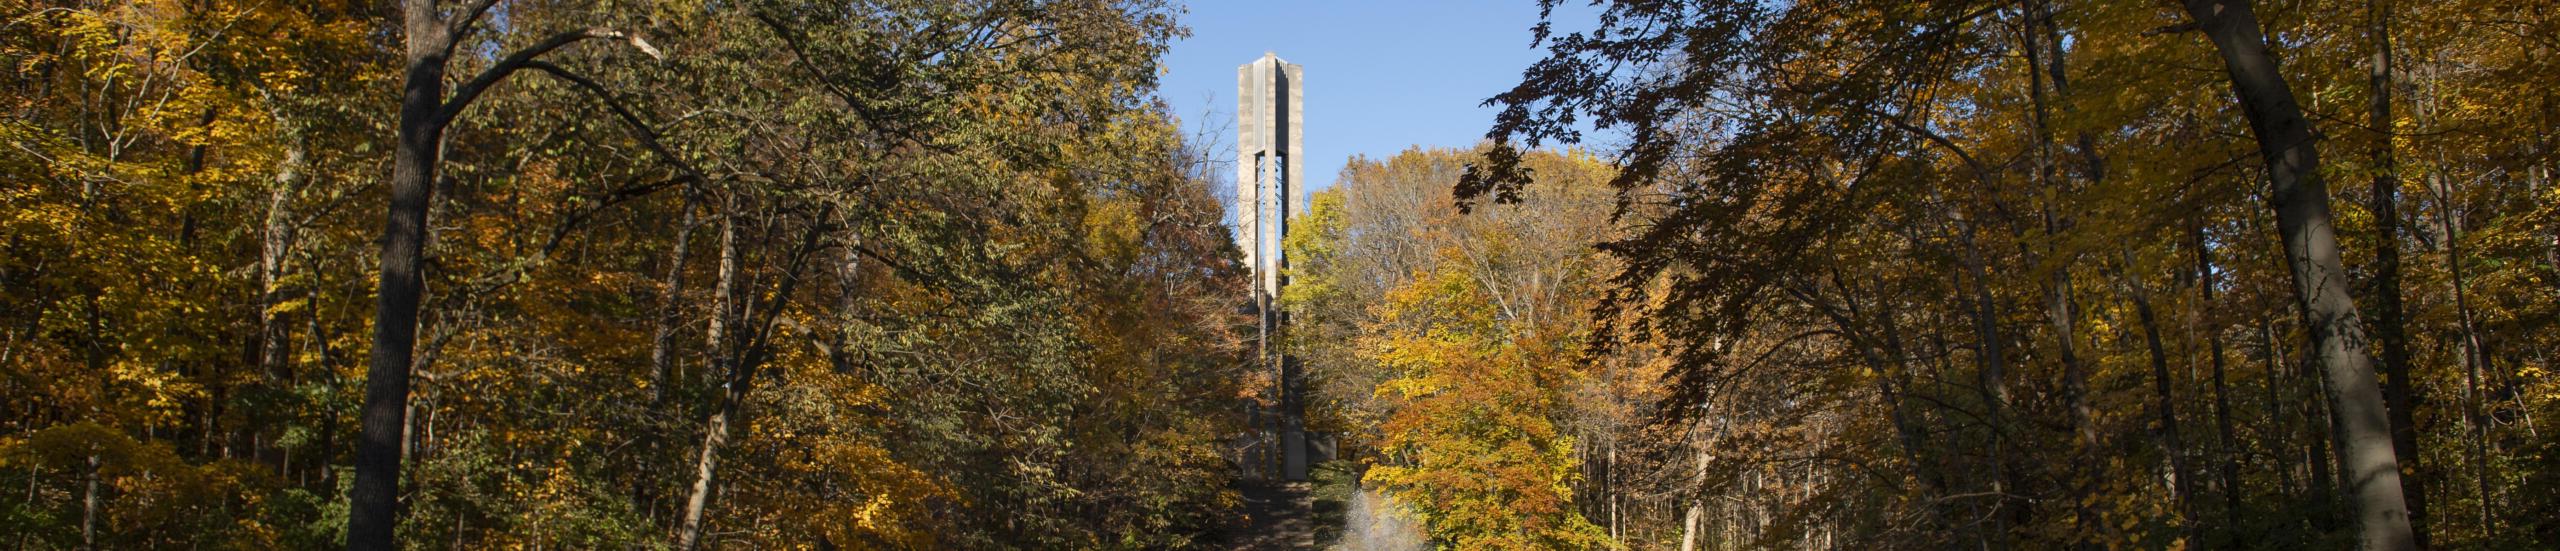 树木在秋天的颜色与背景的carillon